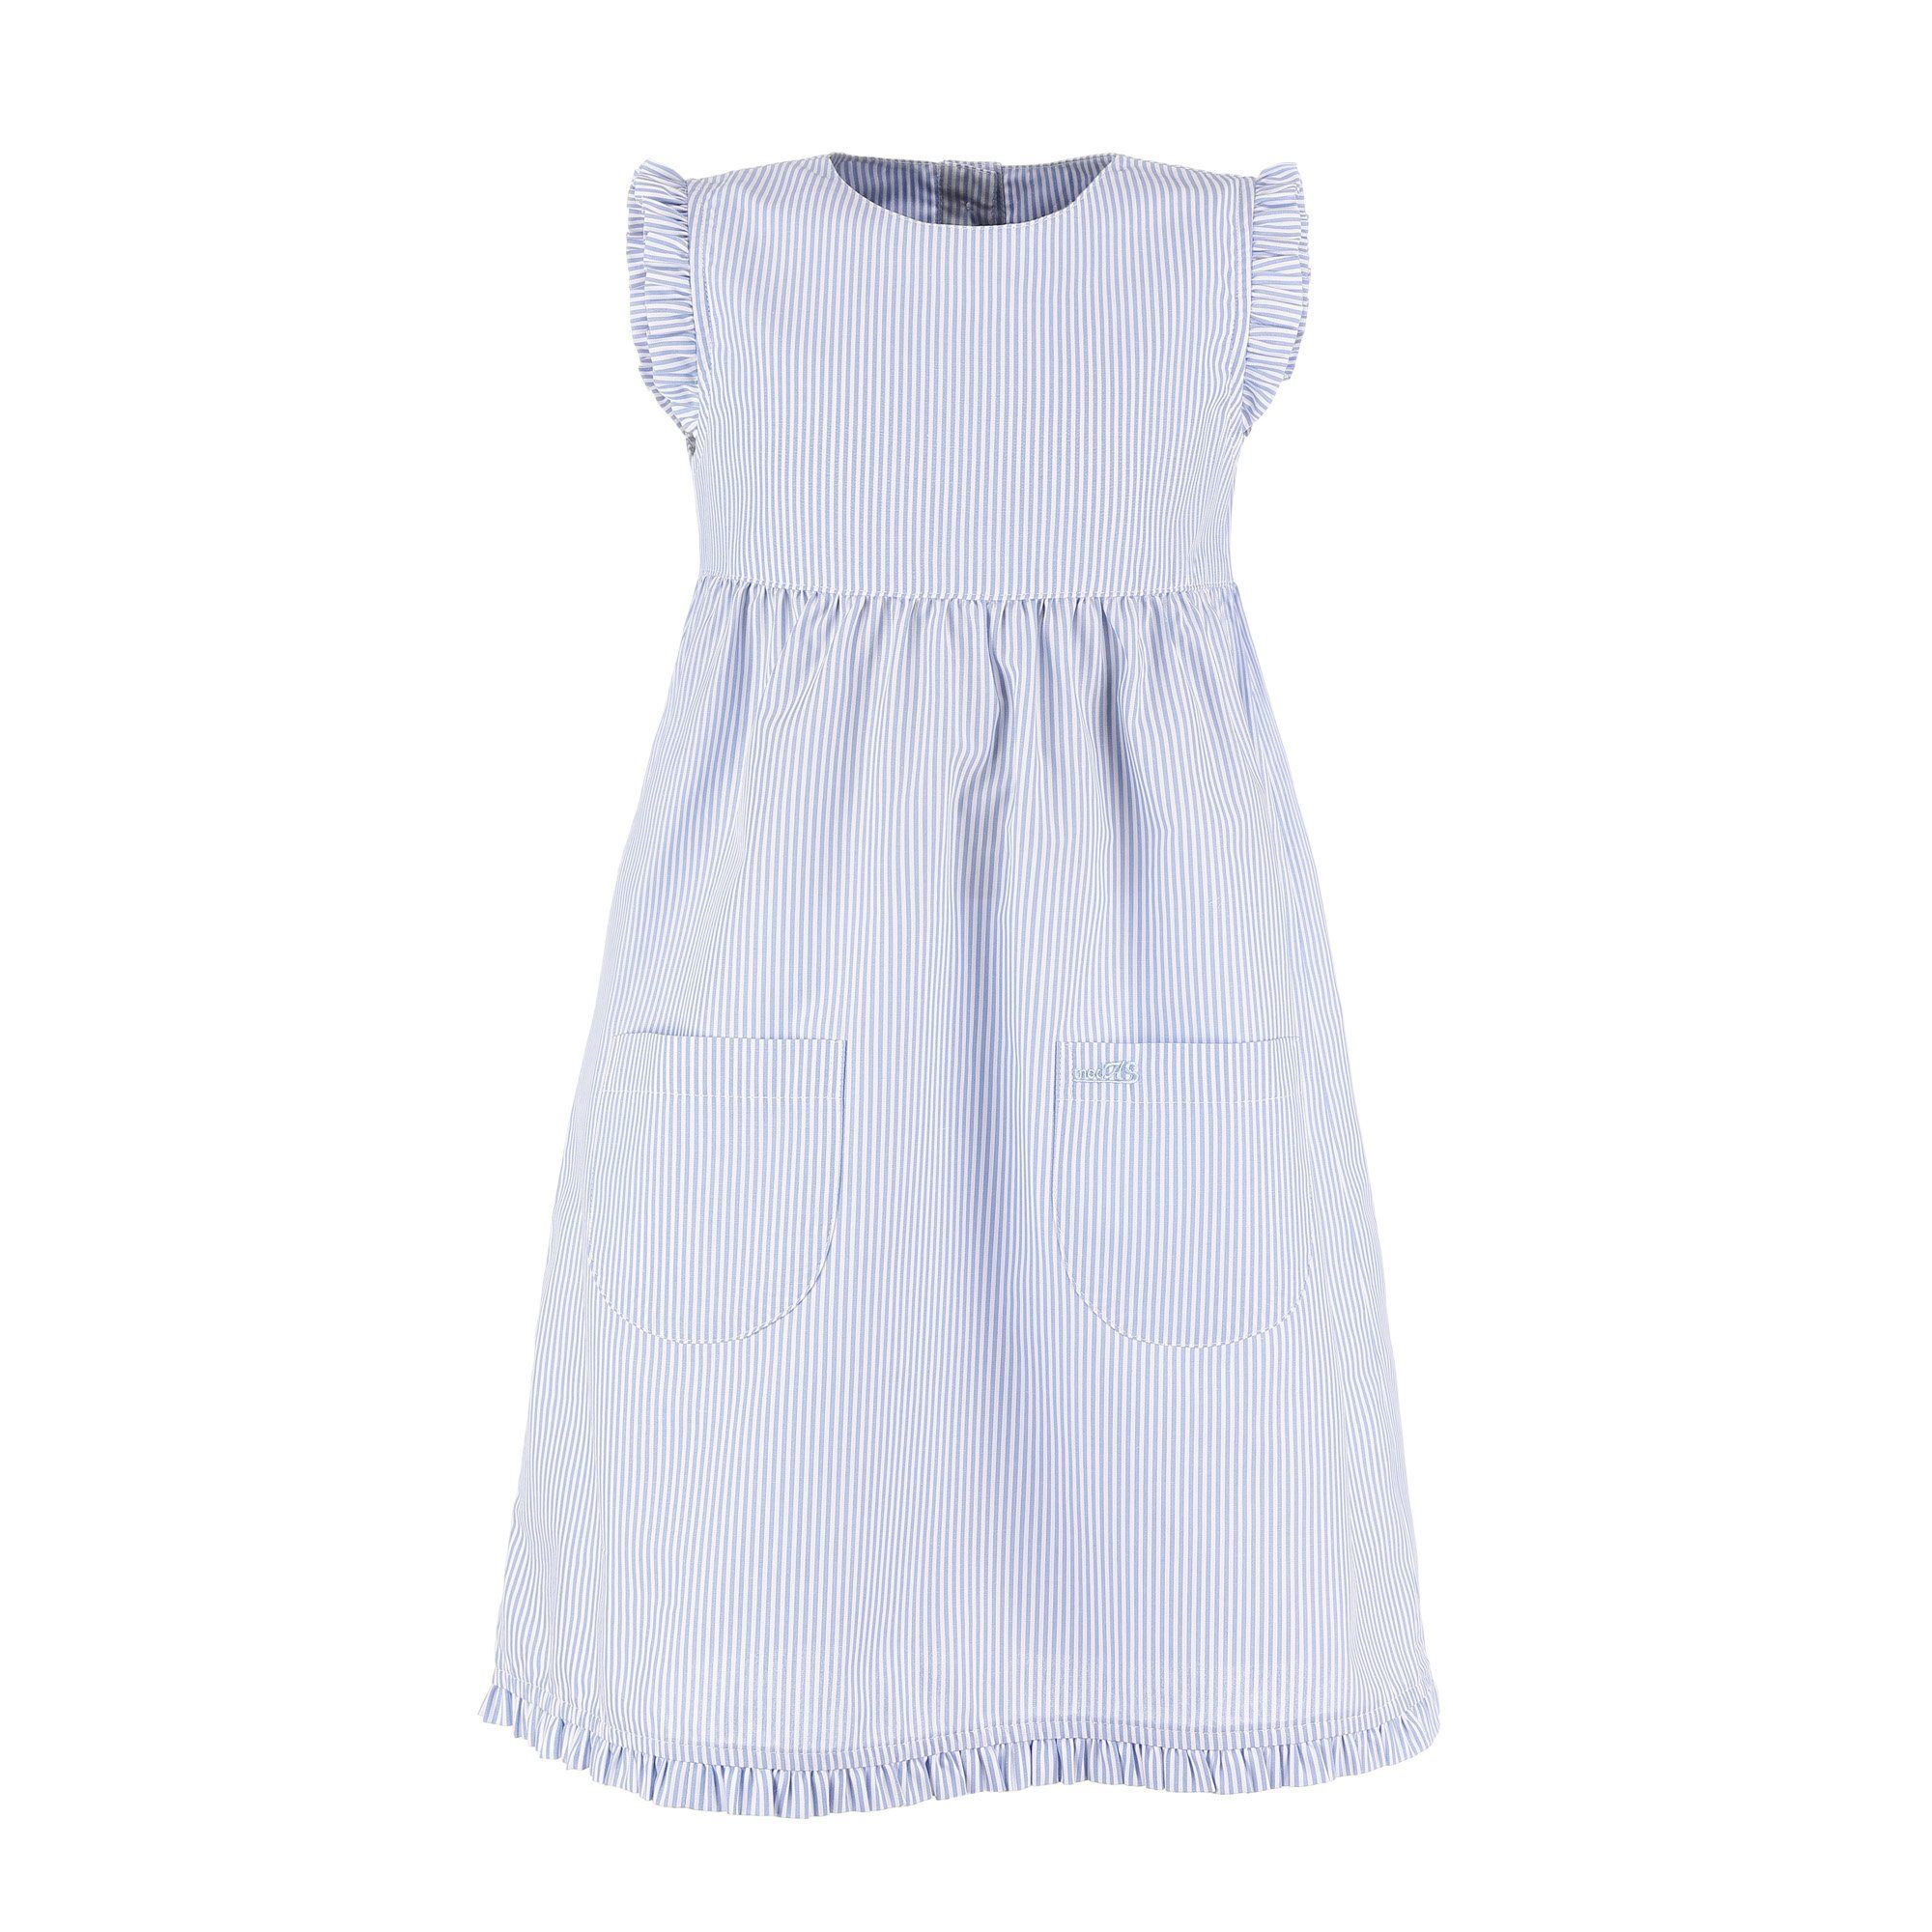 Angebotspreis modAS Sommerkleid Kinder Kleid gestreift gestreift mit (073) Mädchenkleid azur/weiß Rüschen Streifen - mit